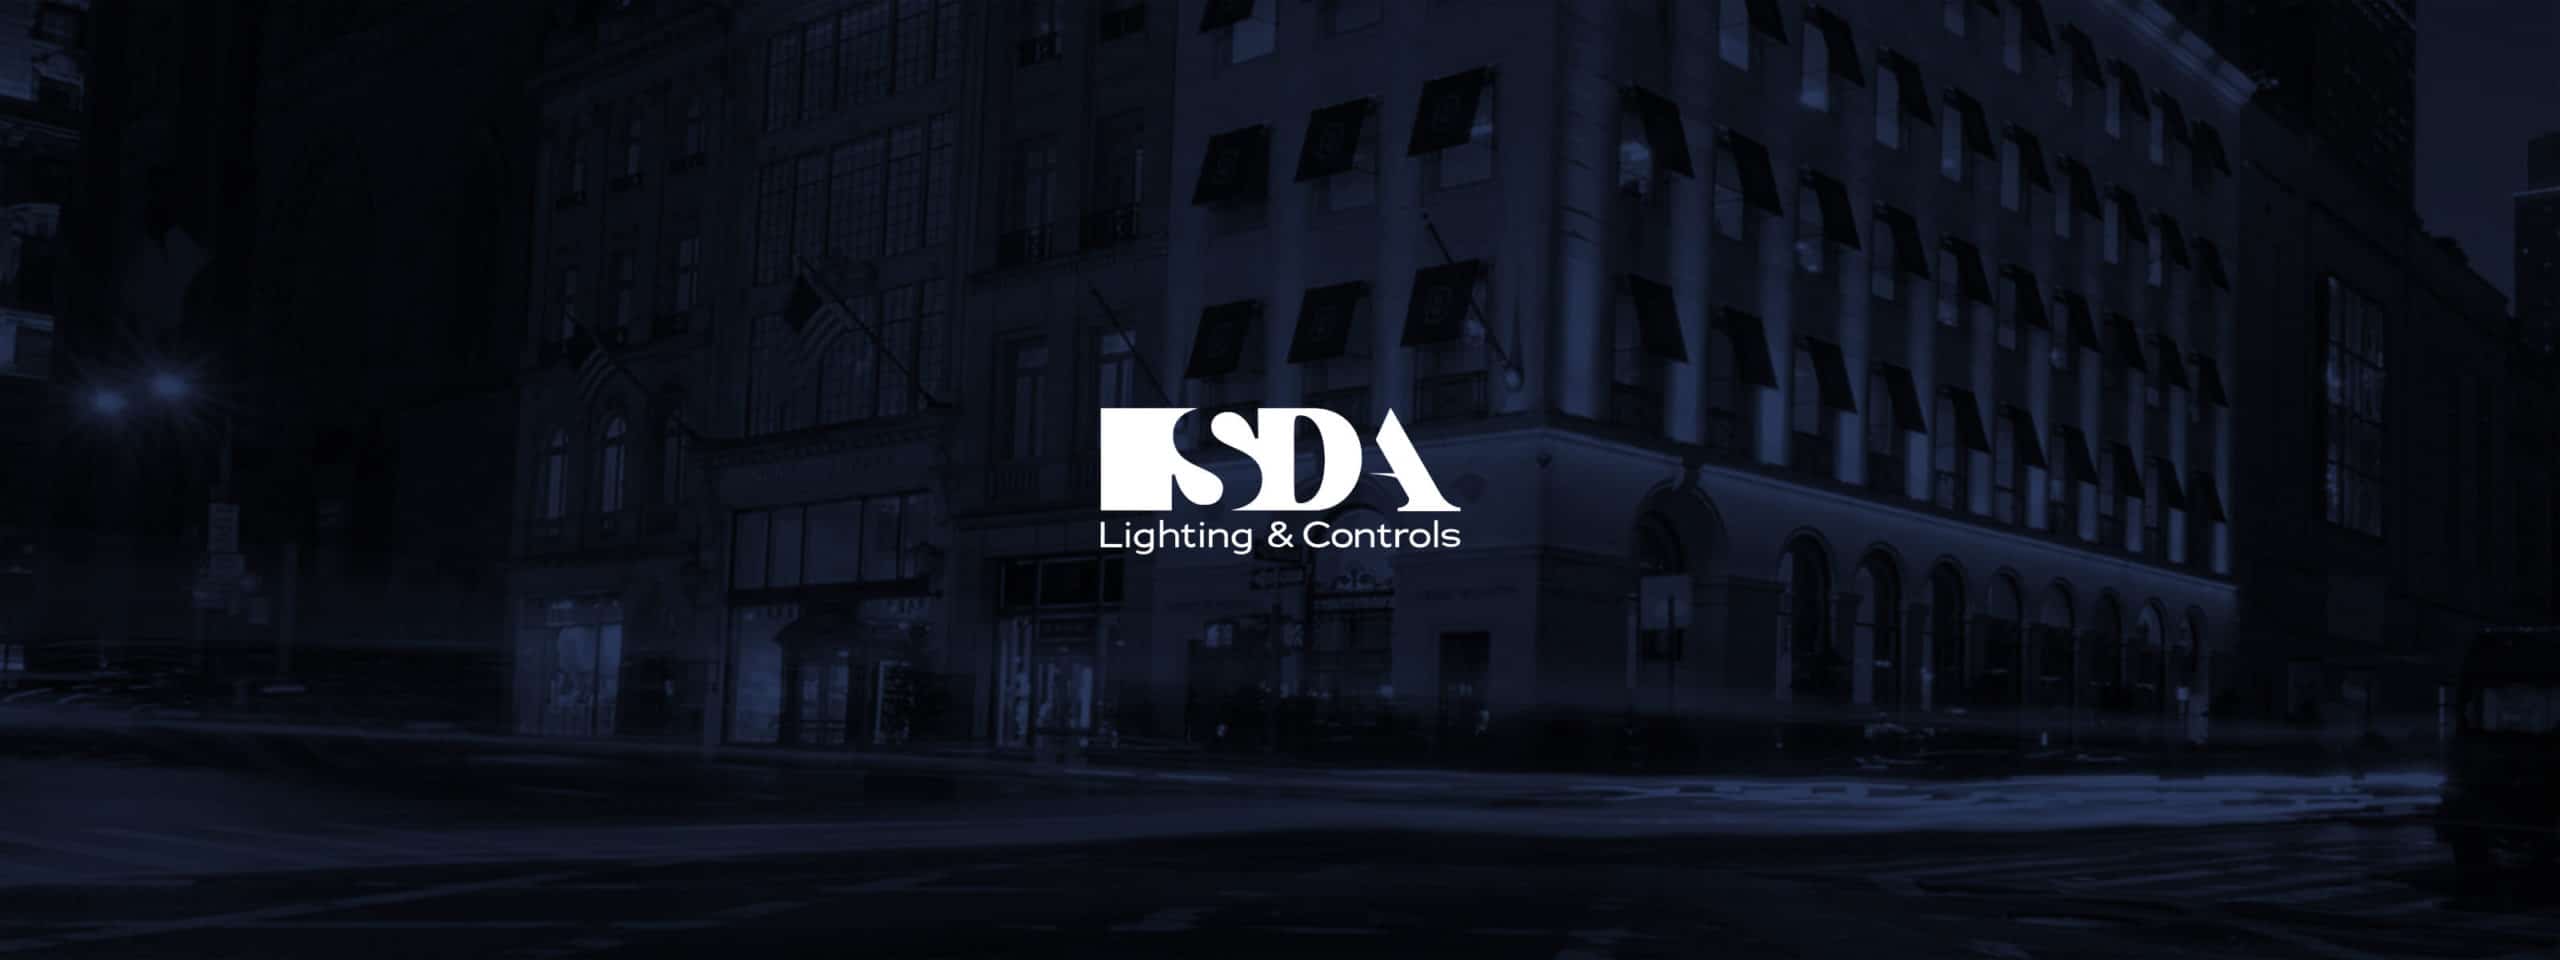 SDA Lighting logo and hero